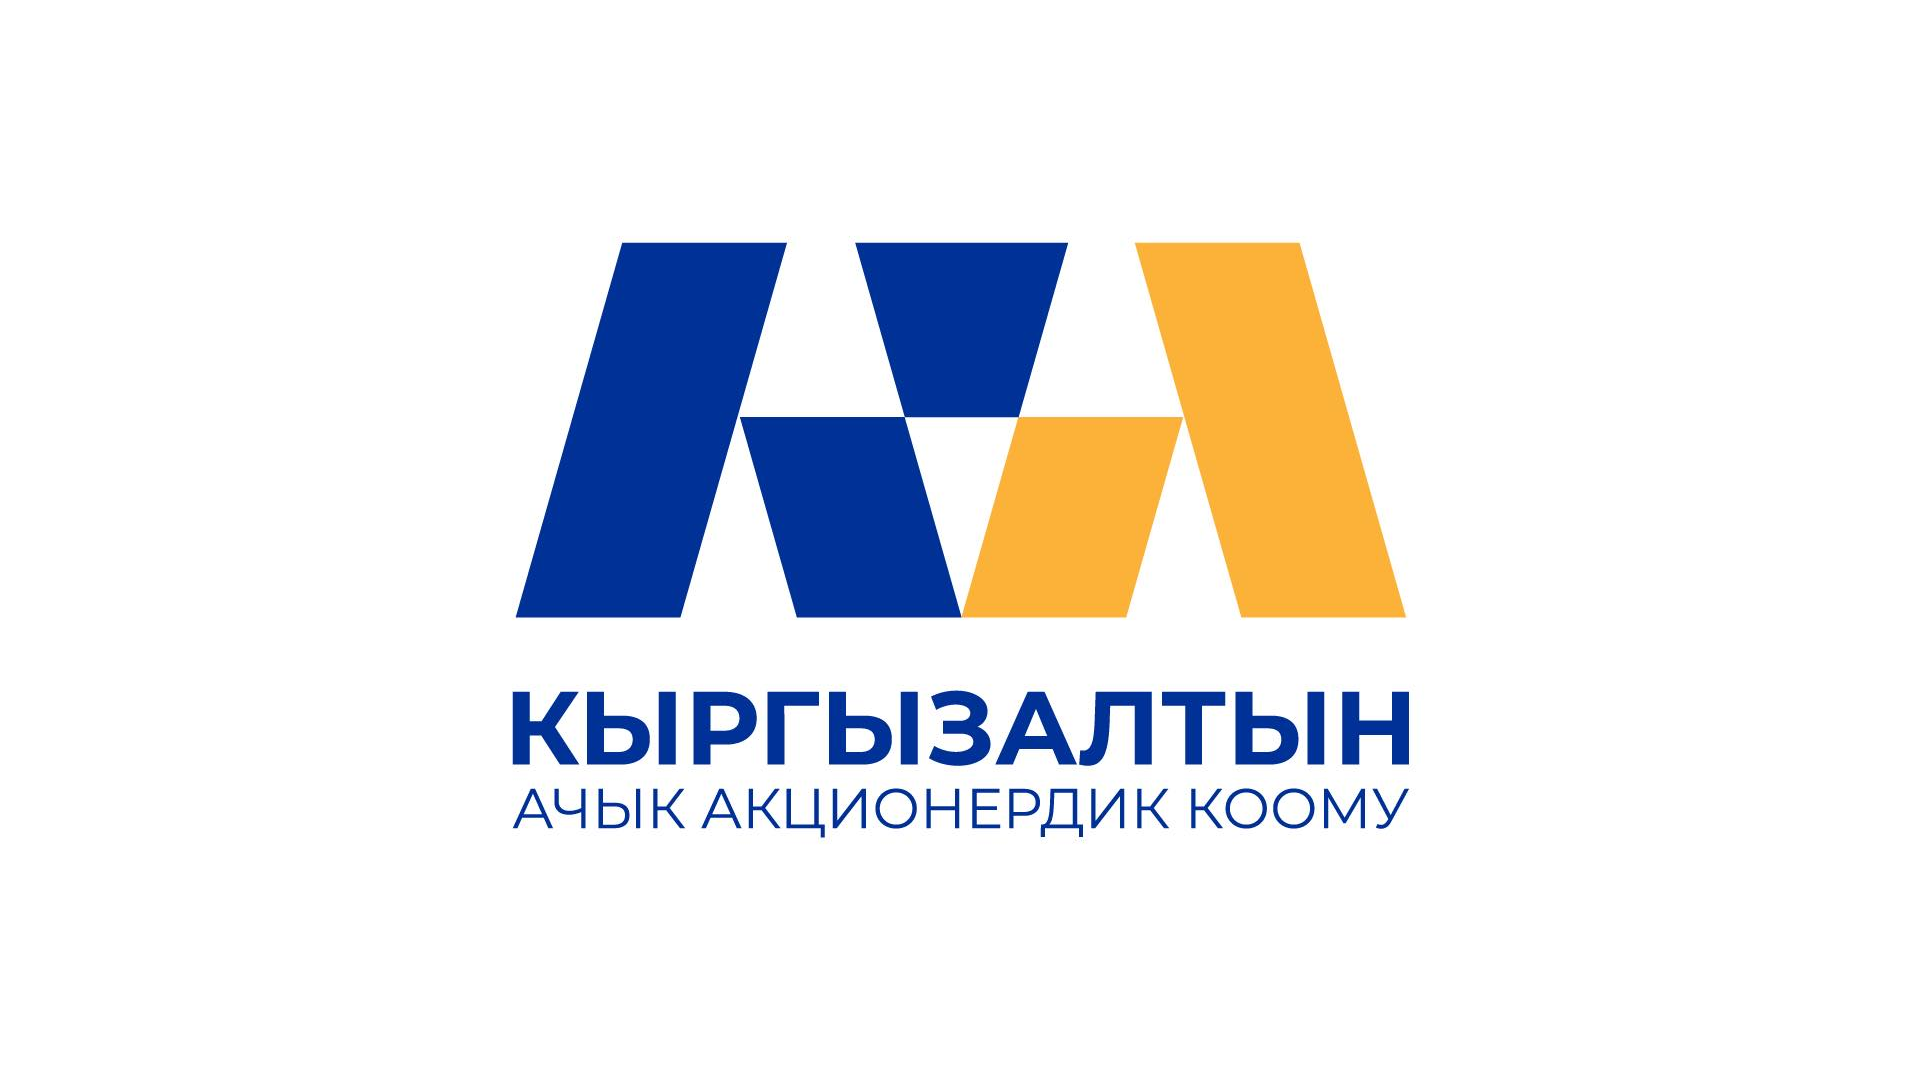 «Кыргызалтын» перевел документооборот на государственный язык